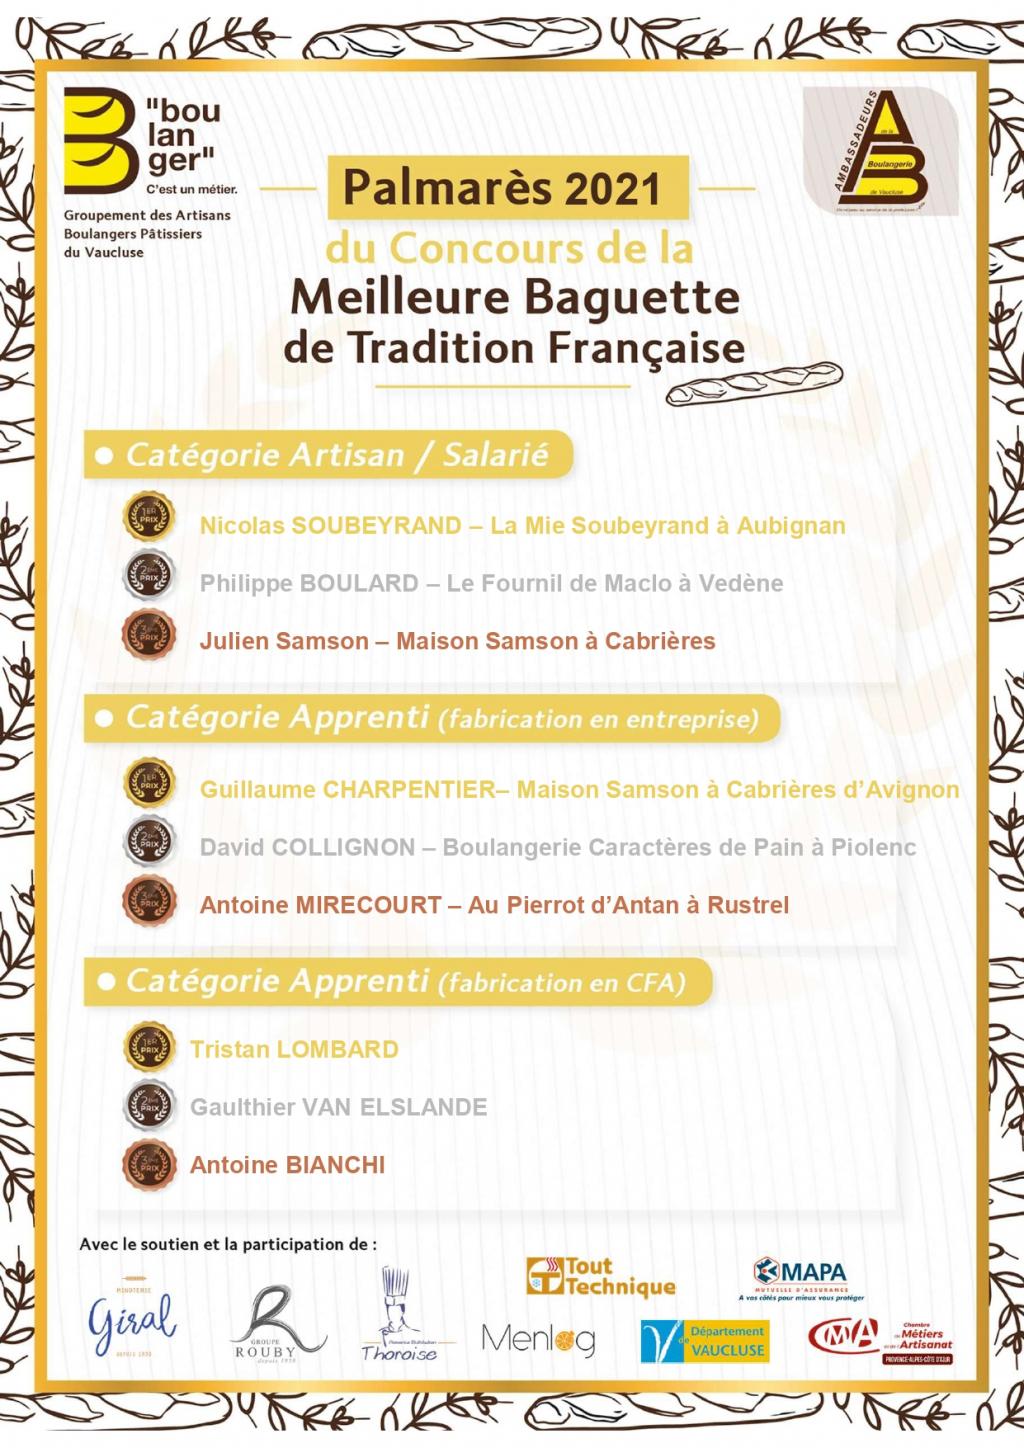 Palmarès du 10ème Concours de la meilleure Baguette de Tradition Française du Vaucluse